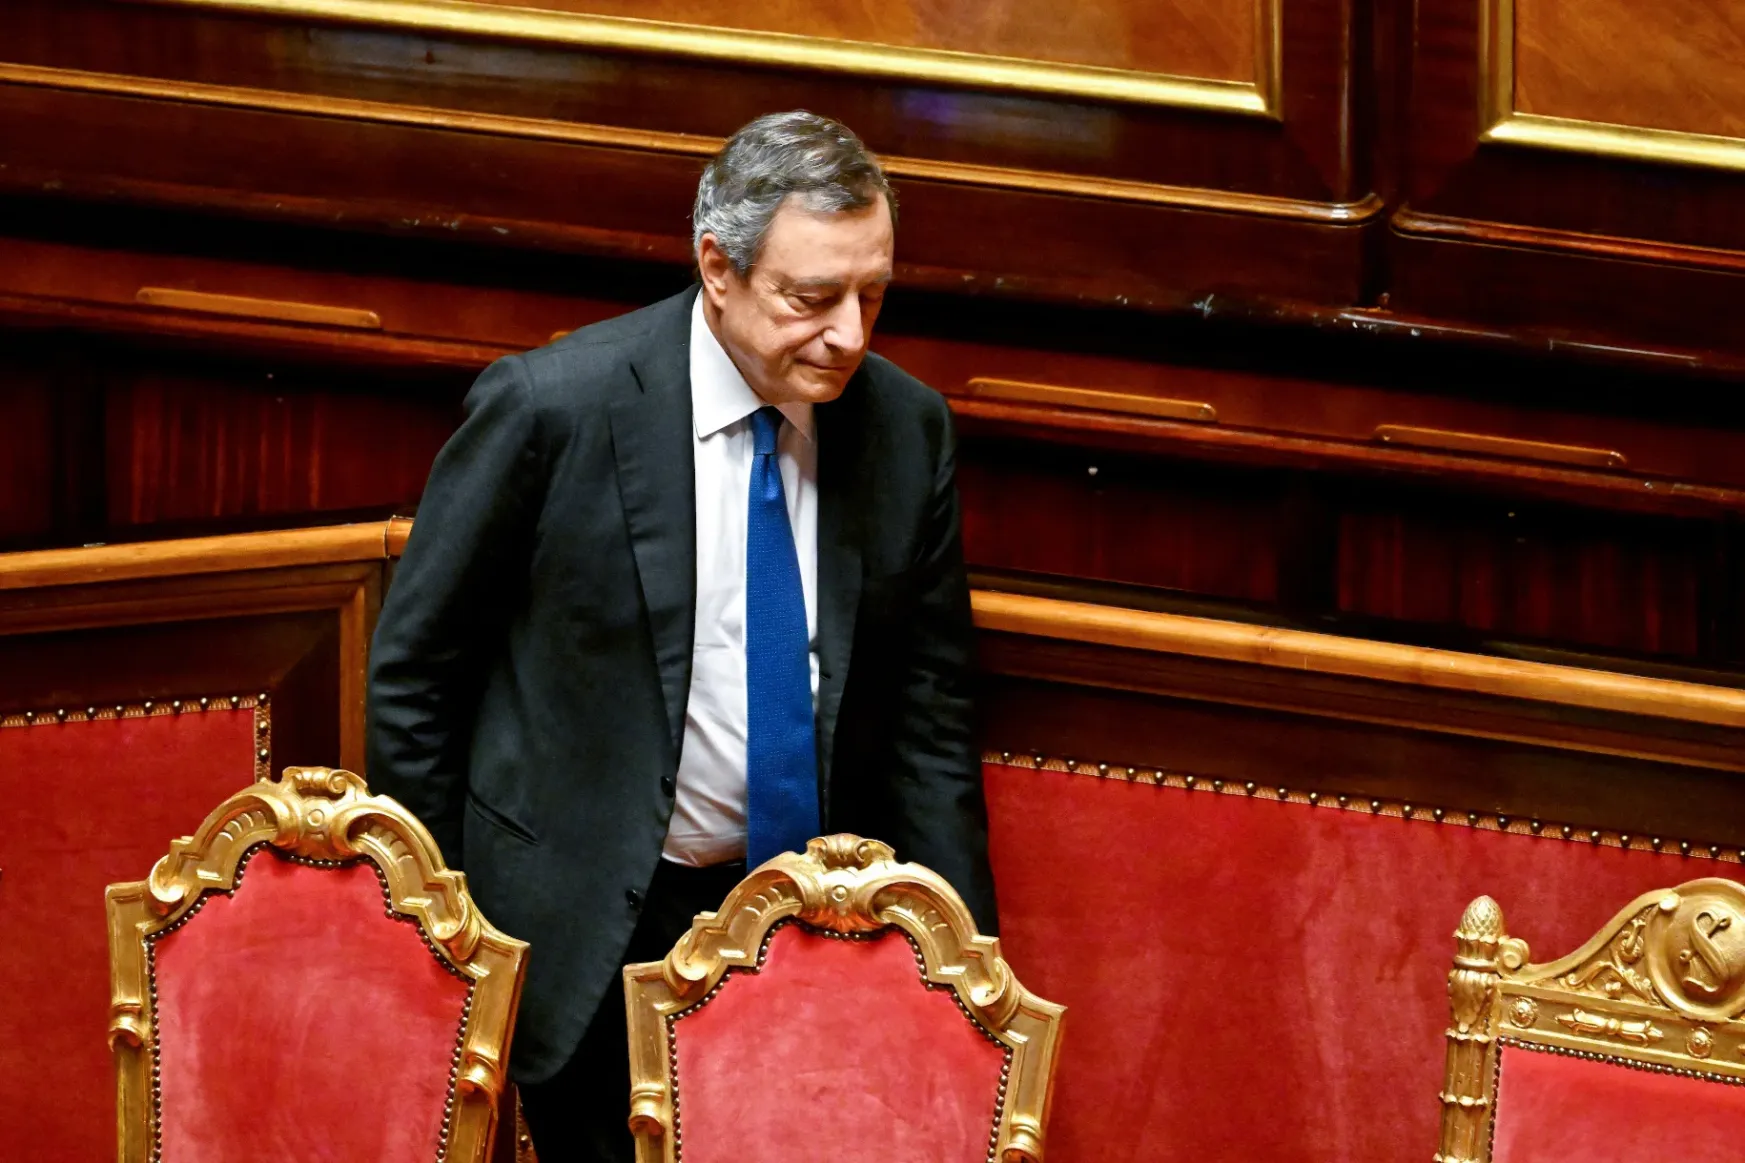 Újból benyújtotta lemondását az olasz kormányfő, hiába nyert a bizalmi szavazáson